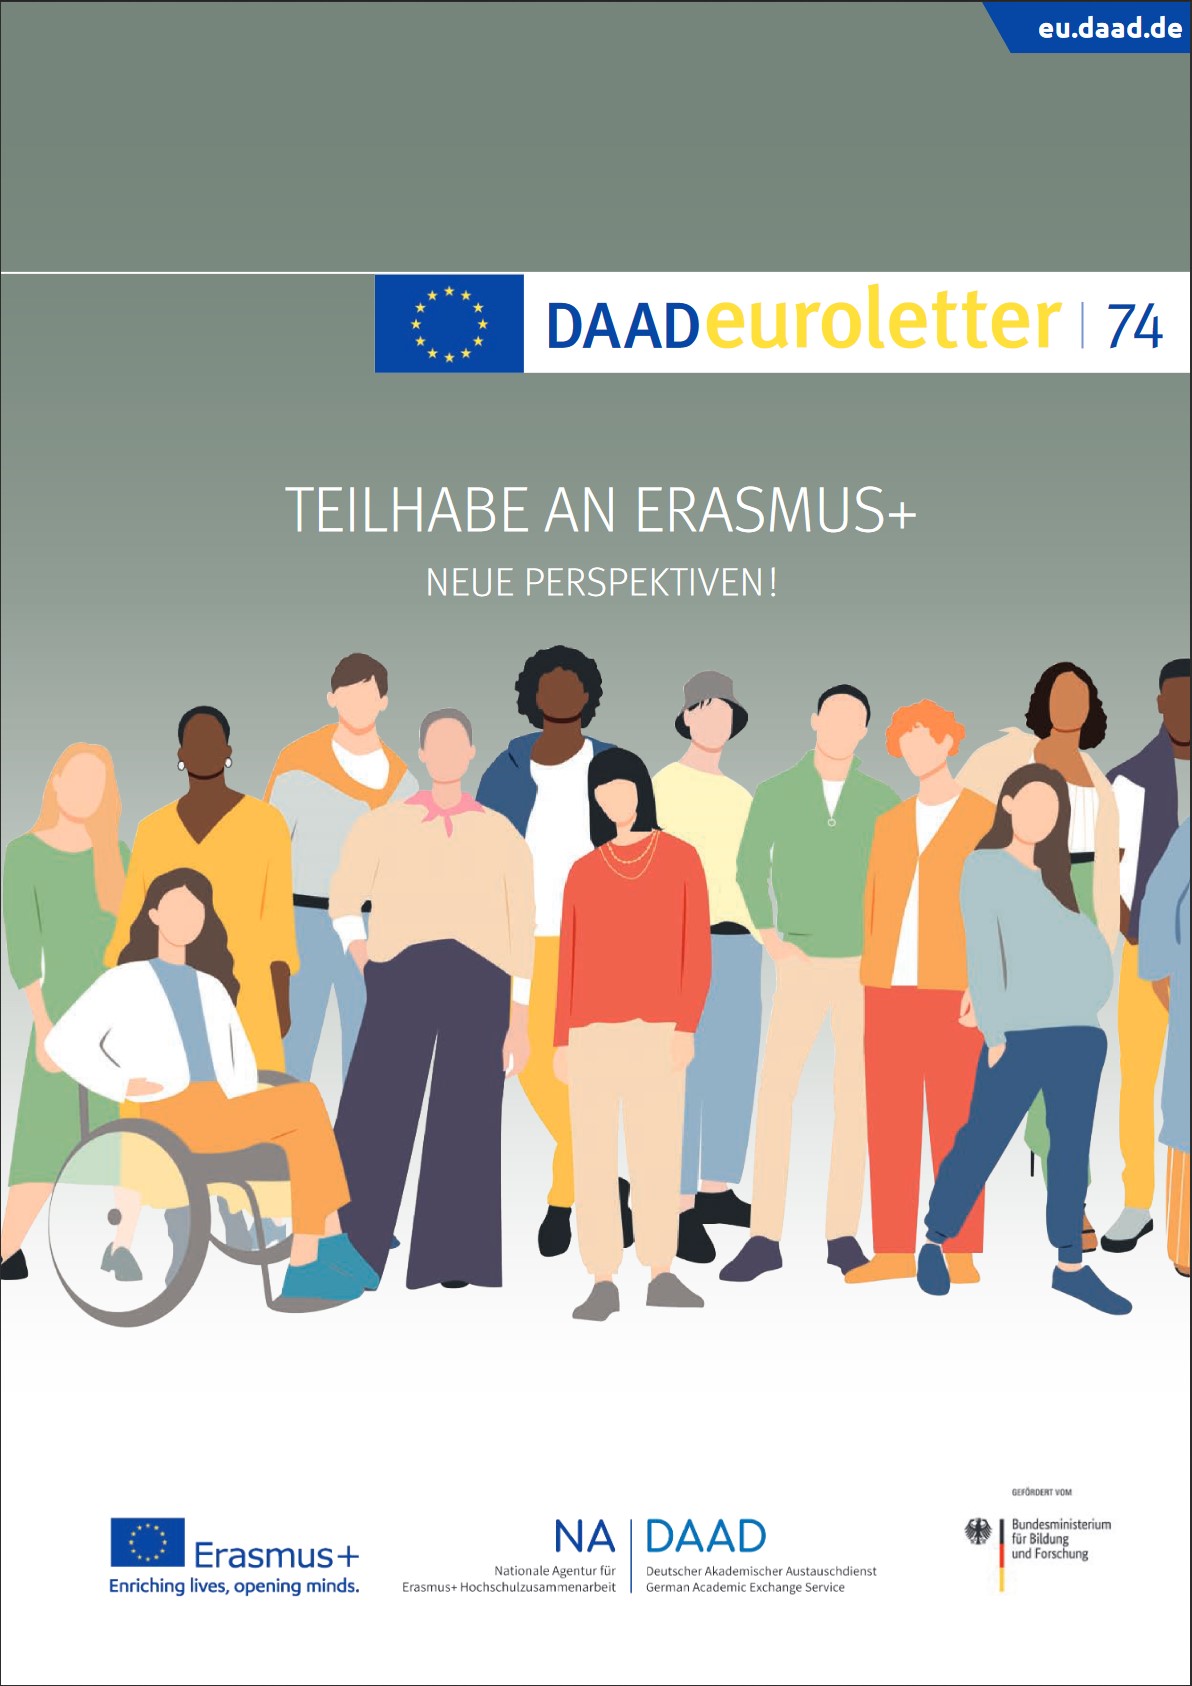 Titelbild des euroletter 74. Bild verlinkt auf: https://eu.daad.de/service/medien-und-publikationen/DAADeuroletter/de/47352-daadeuroletter/